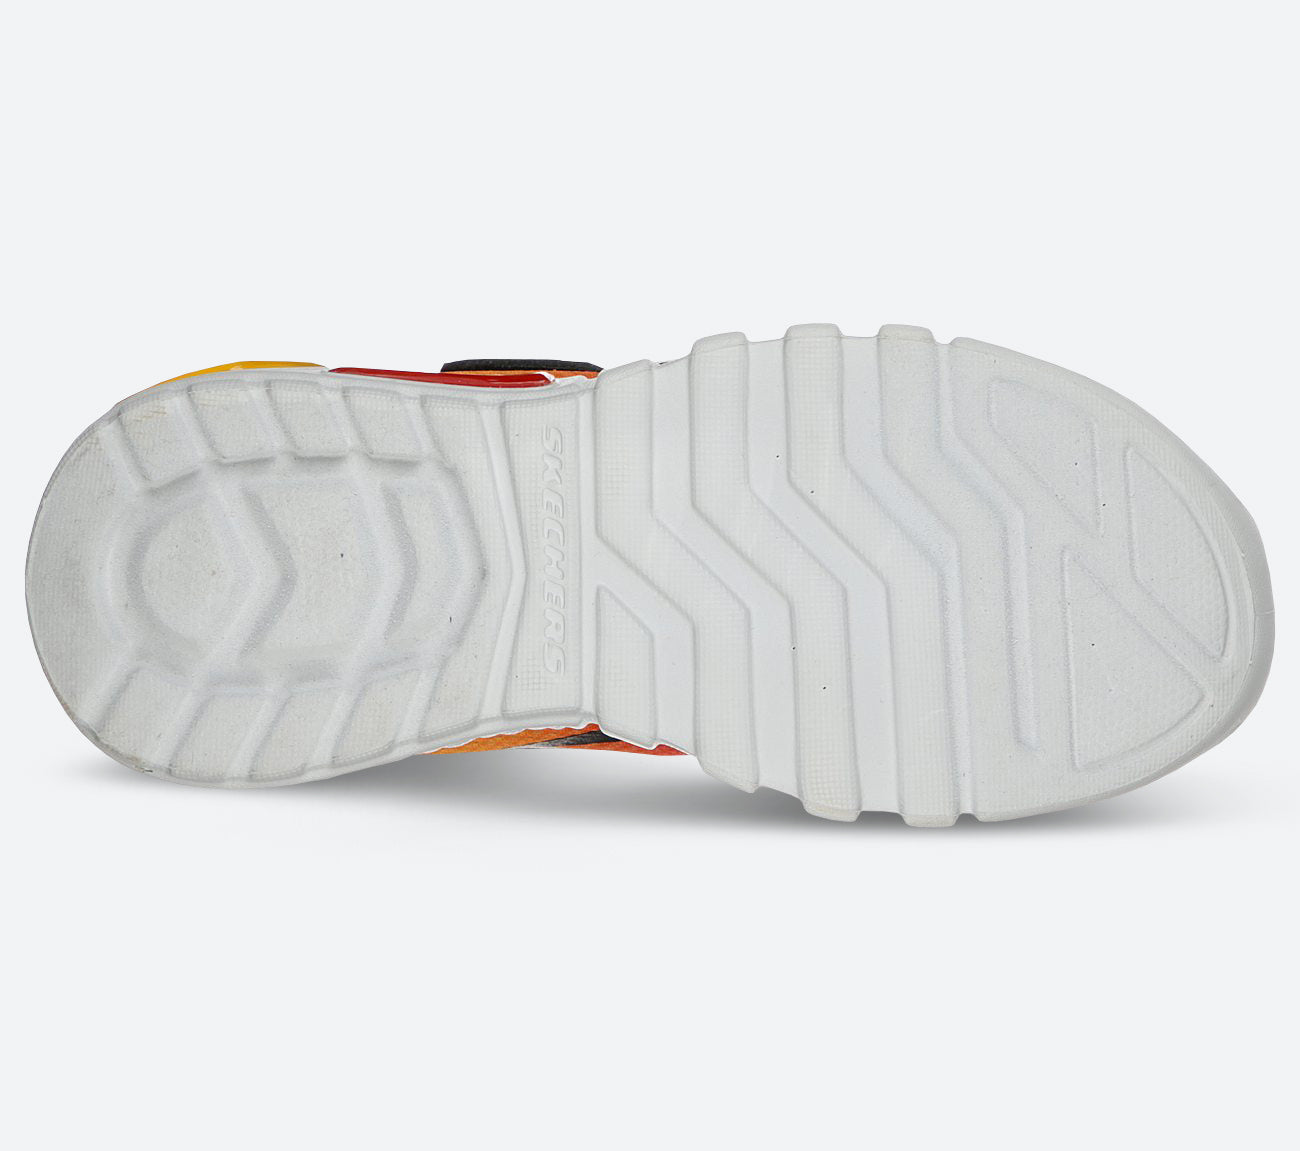 Flex-Glow - Dezlom Shoe Skechers